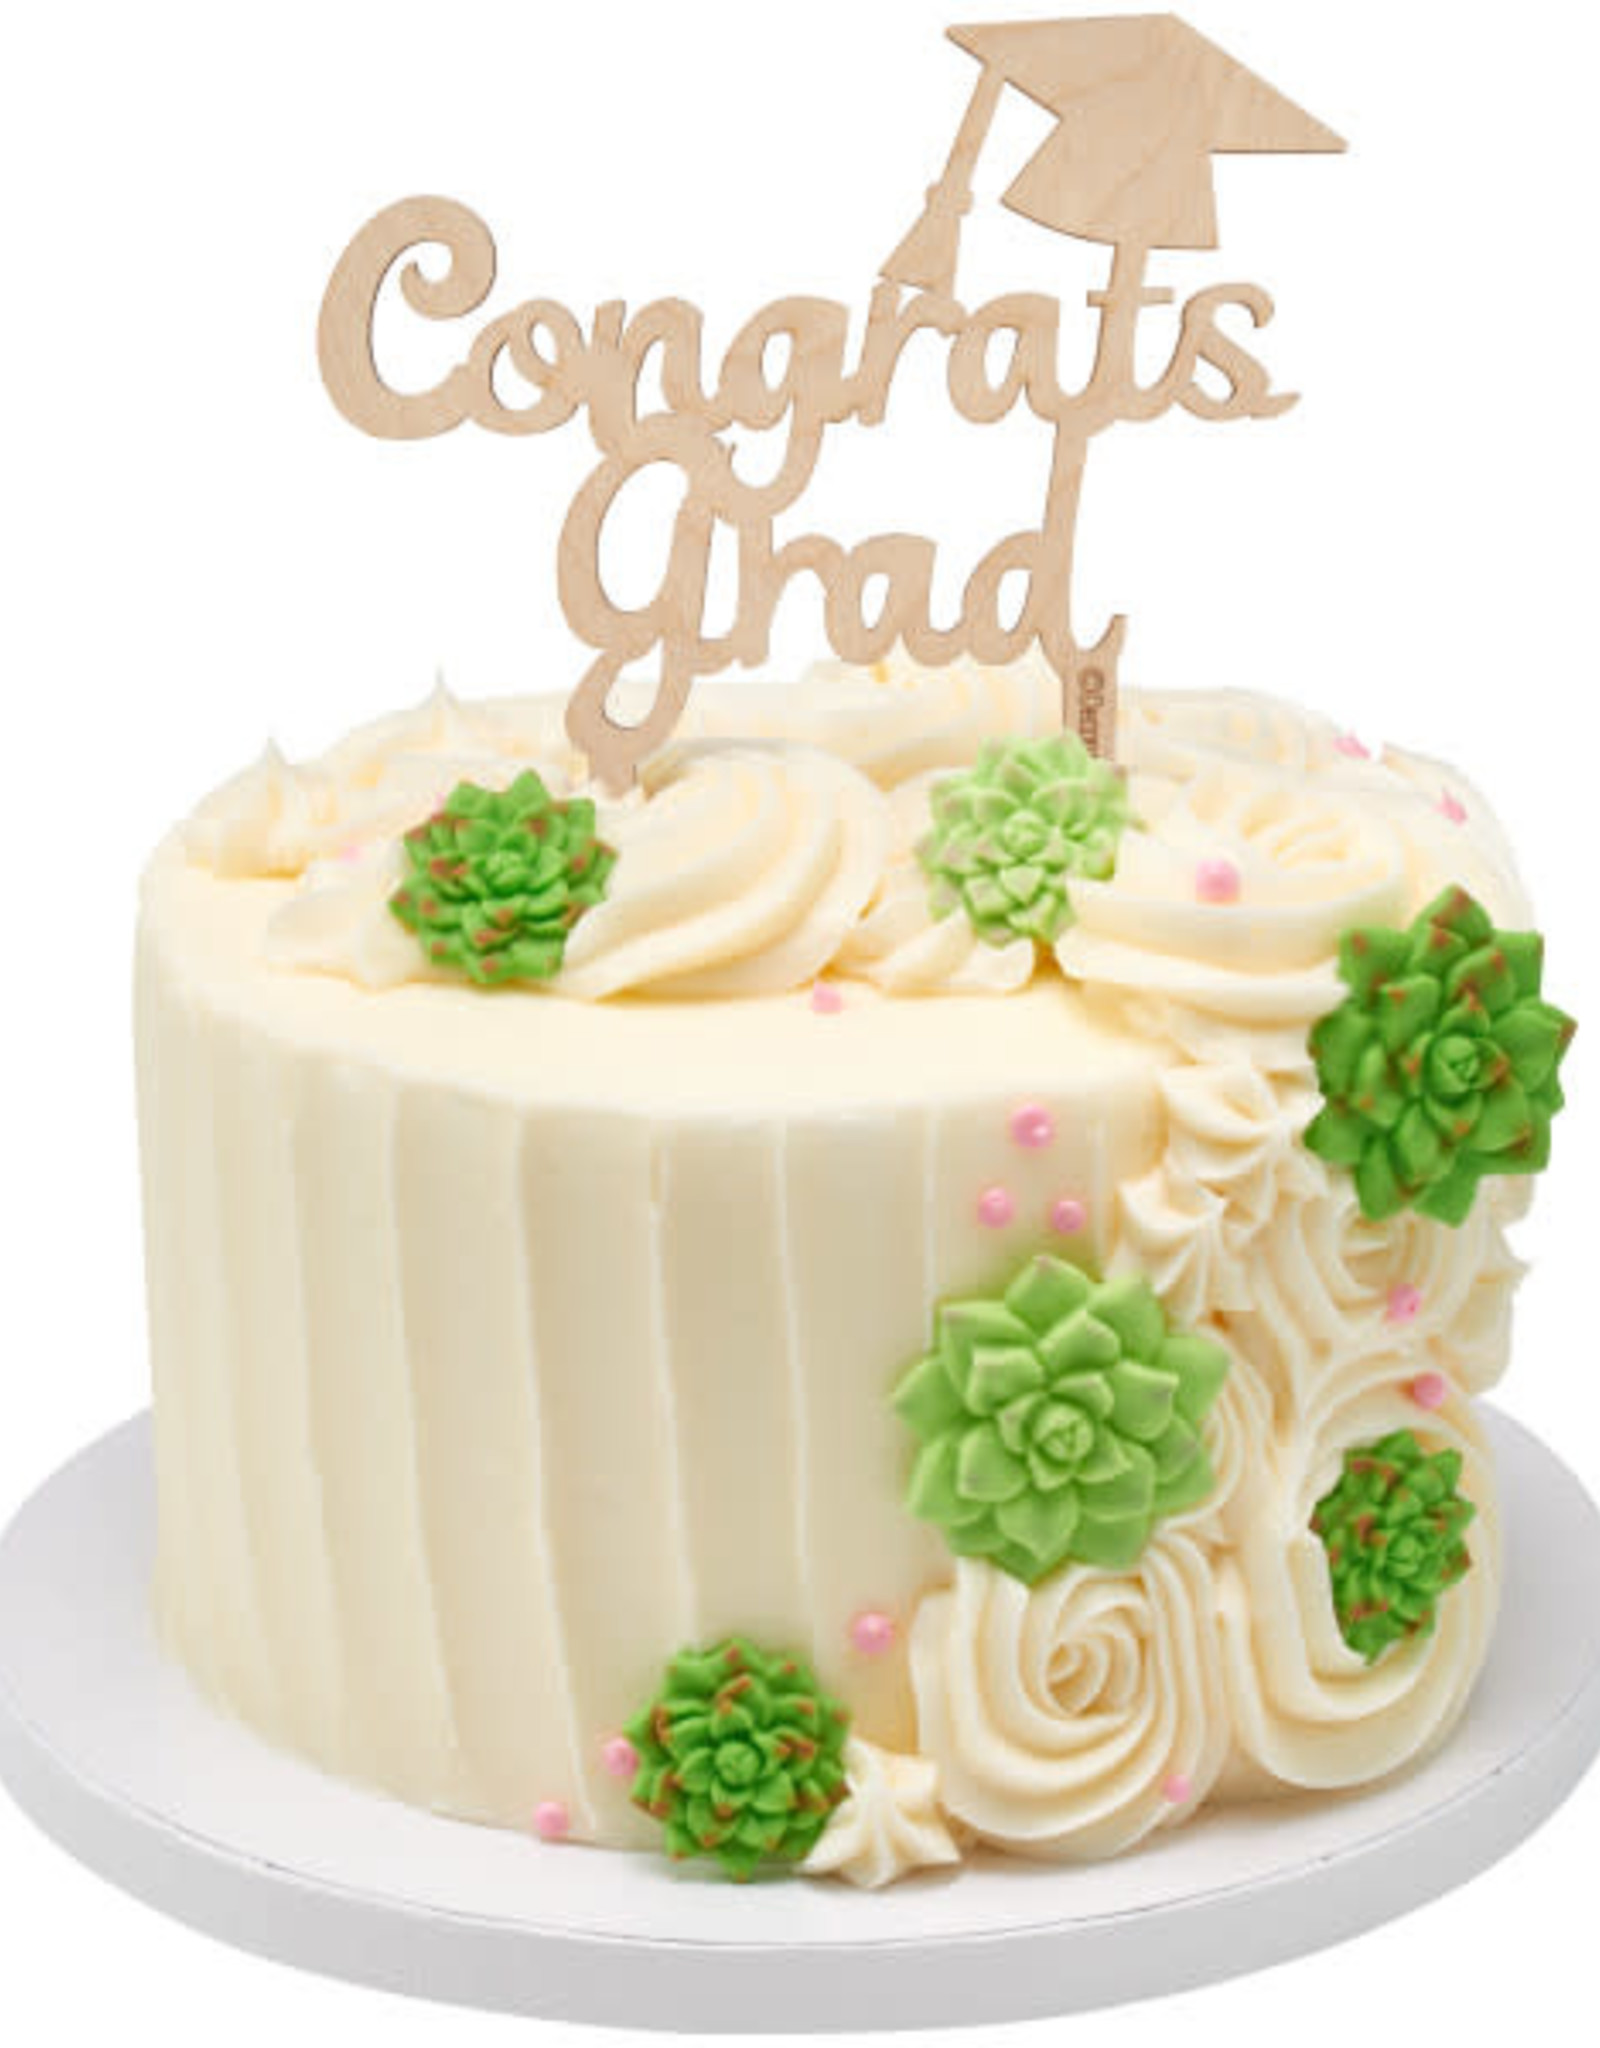 "Congrats Grad" Wood Cake Topper Pick